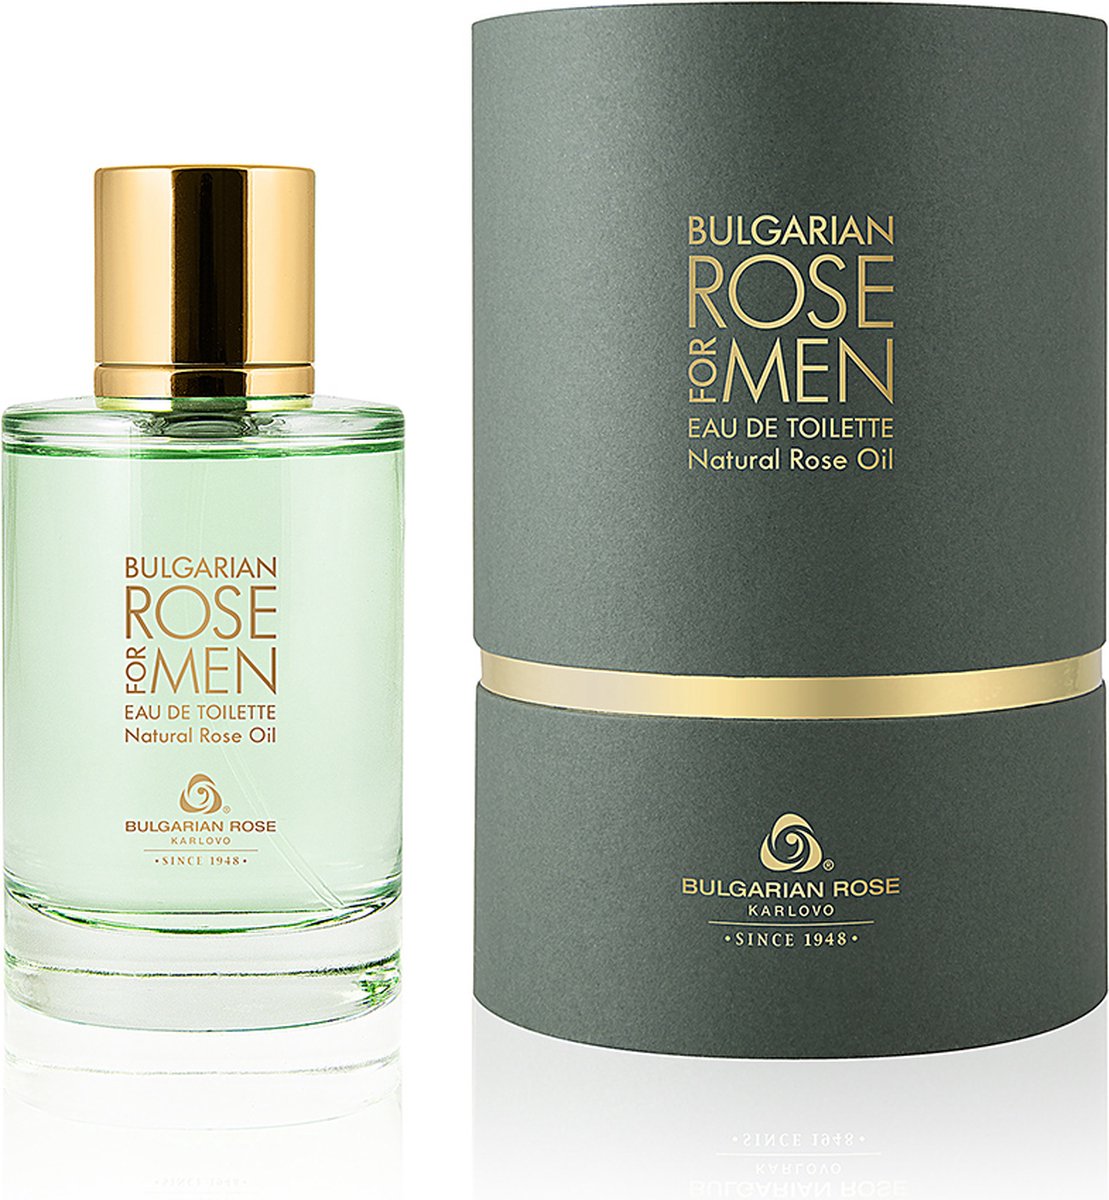 Rose for Men Eau de toilette | Geur die mannelijkheid belichaamt - Met 100% natuurlijke Bulgaarse rozenolie en rozenwater | Cadeau voor Valentijn